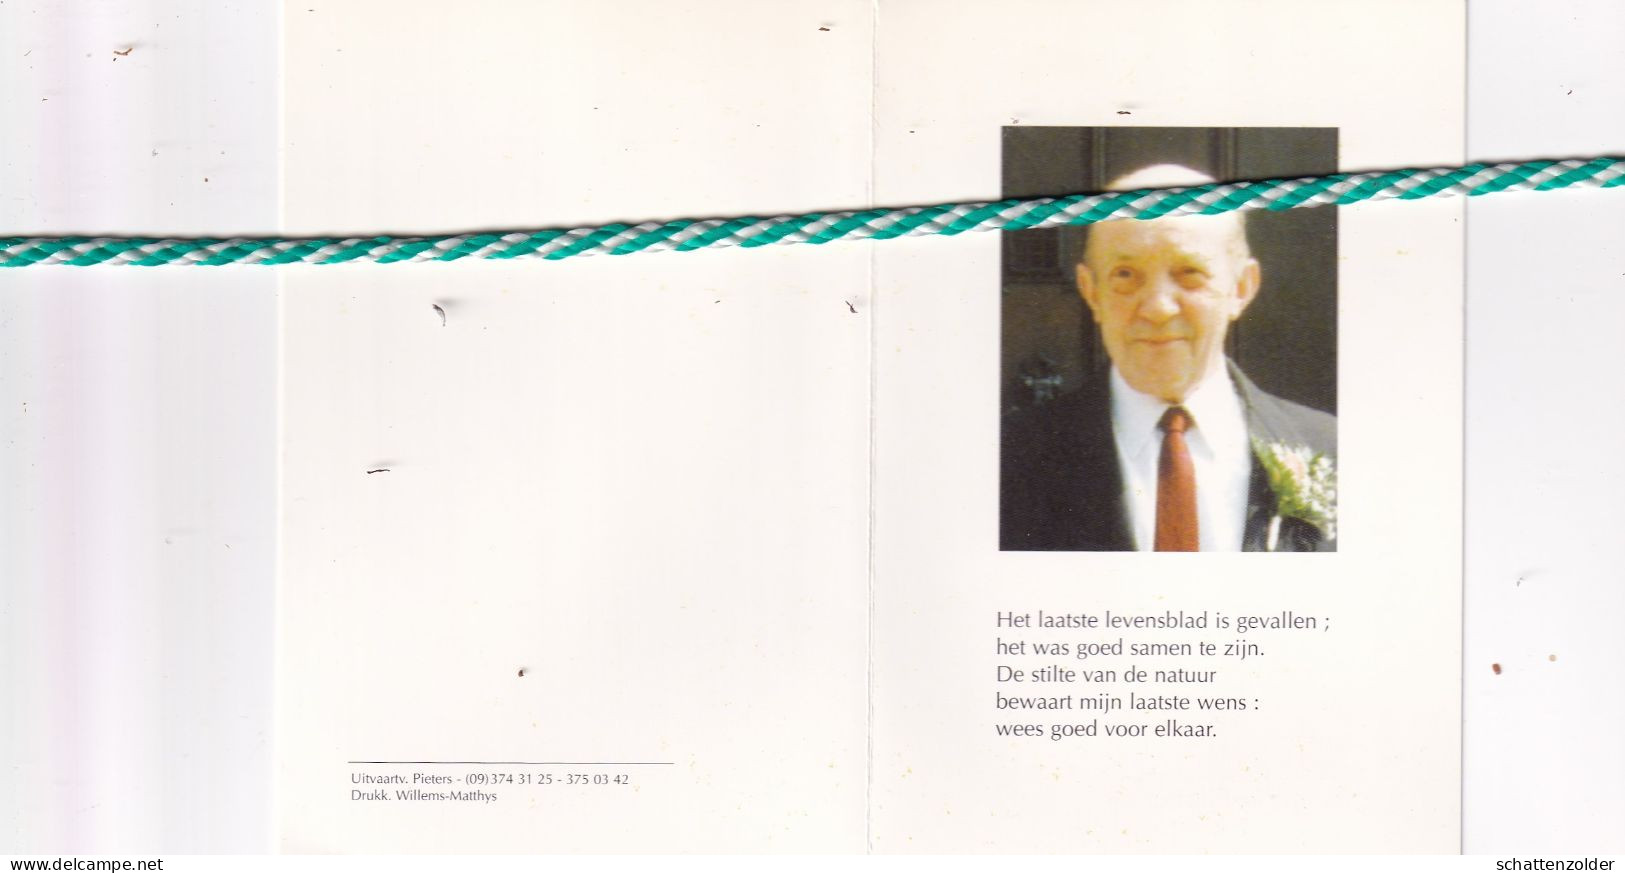 Gerard Verkimpe-Wittevrongel, Knesselare 1924, Sijsele 1997. Foto - Obituary Notices